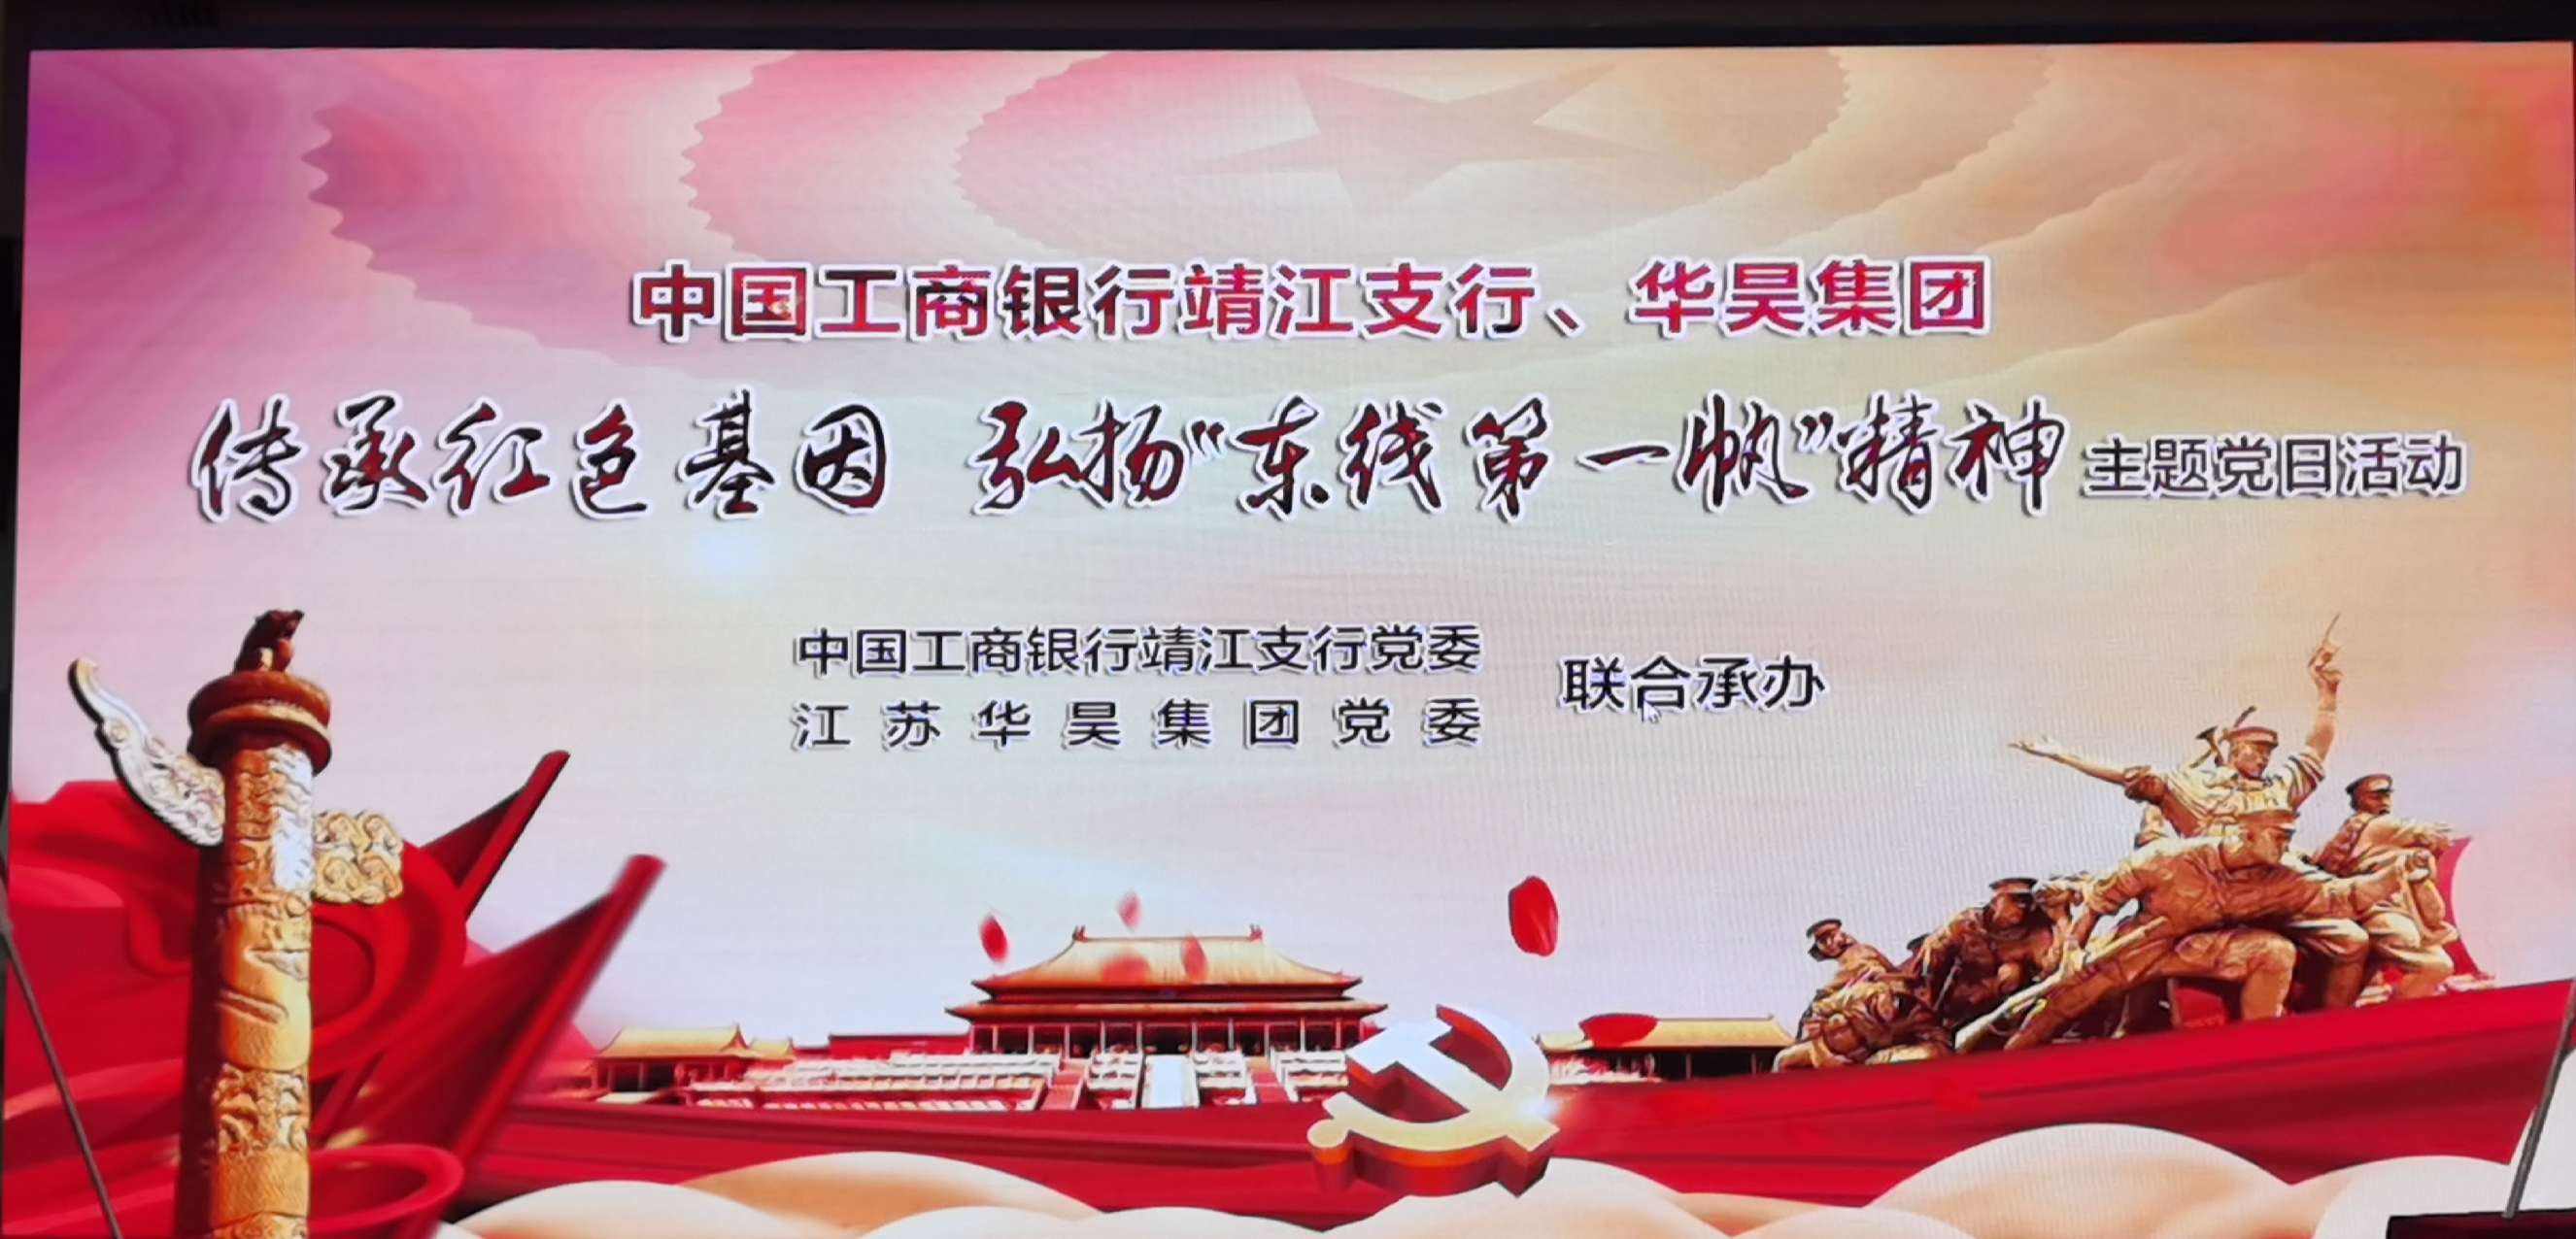 工银理财特色党建品牌在北京发布